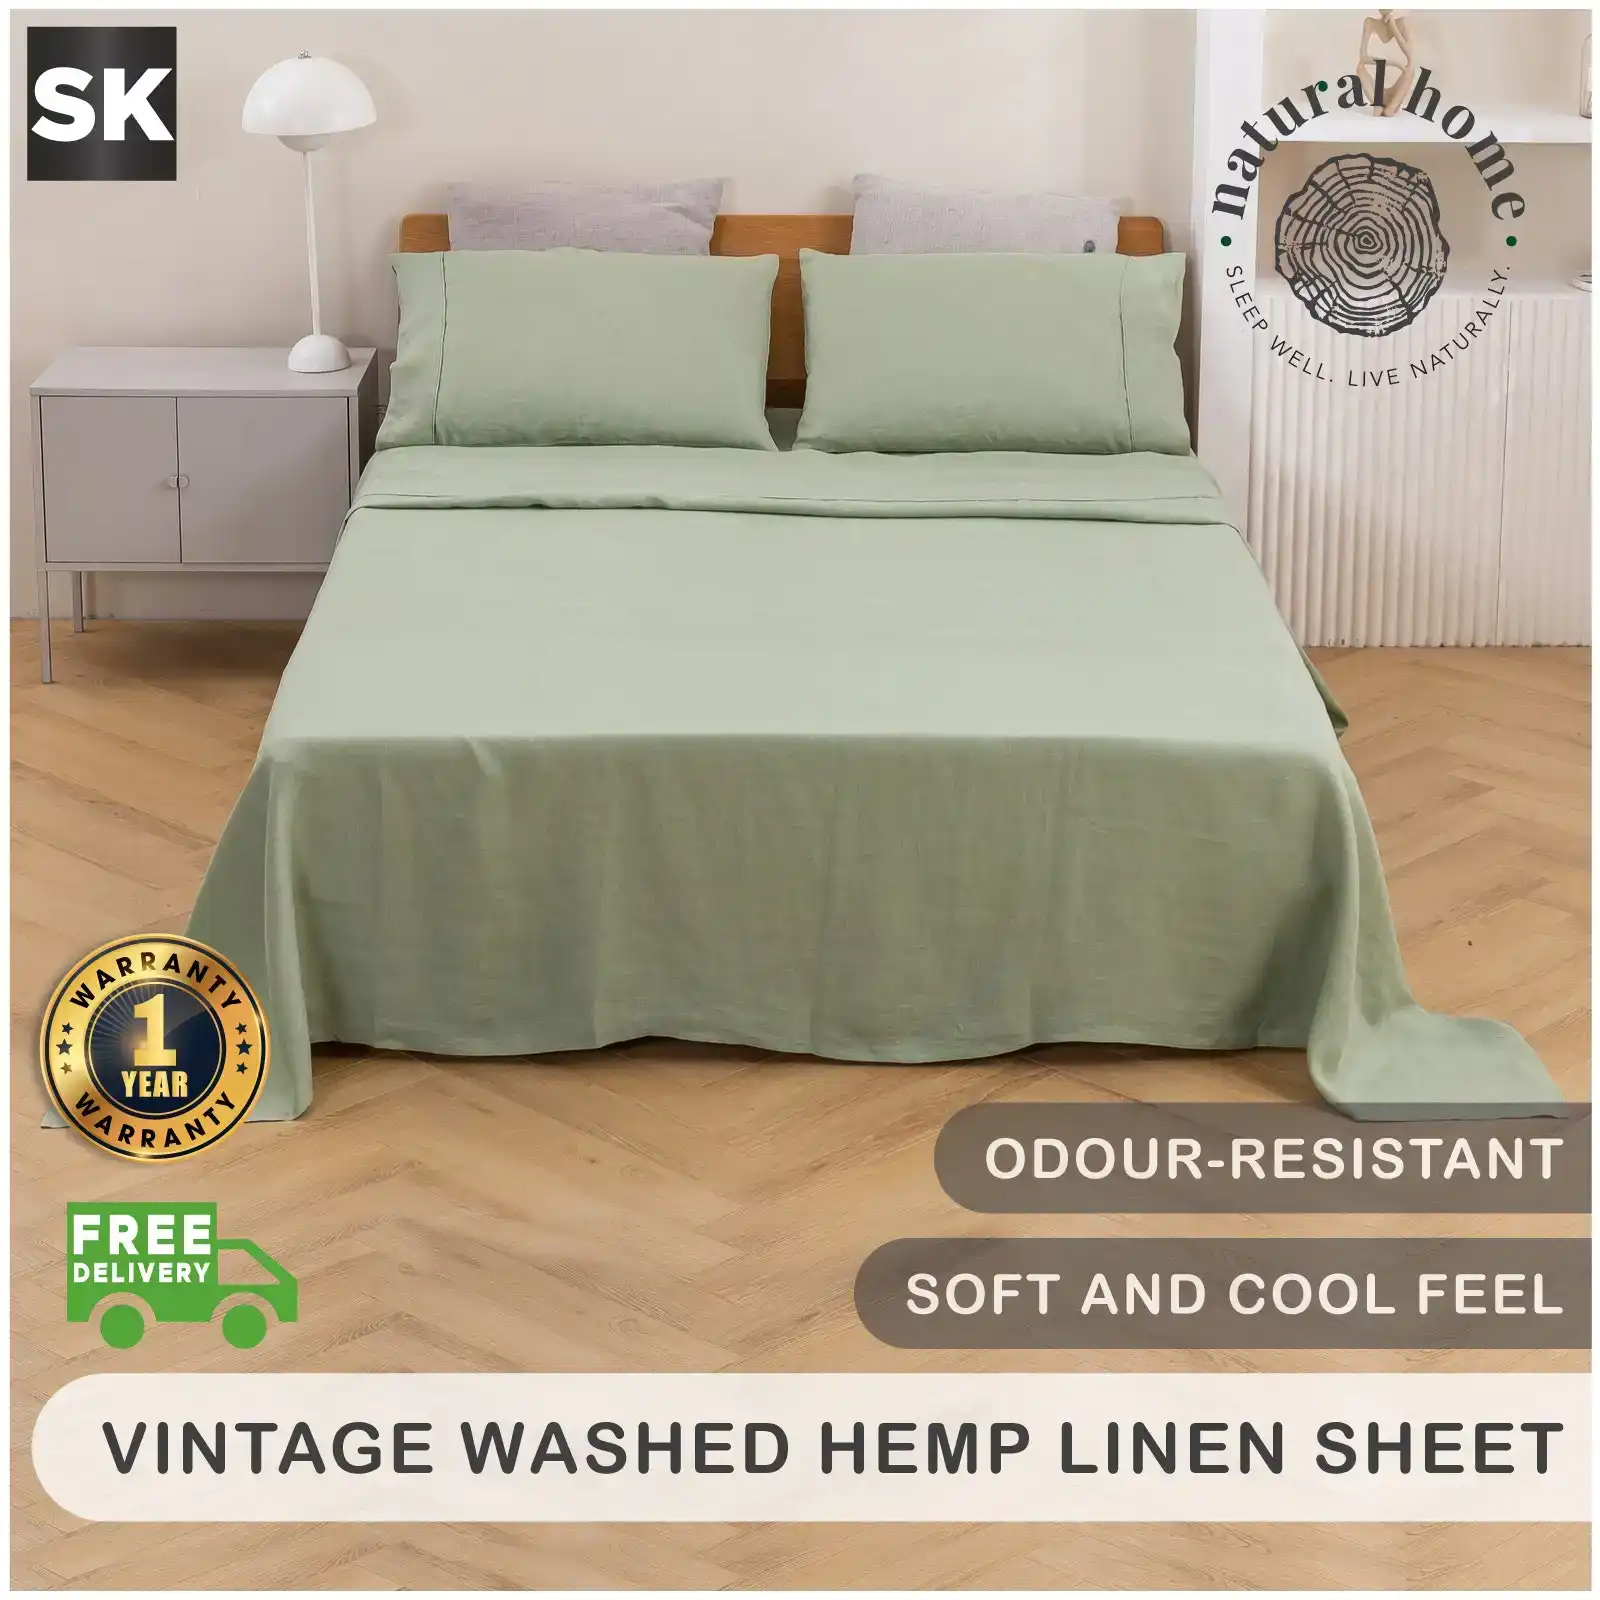 Natural Home Vintage Washed Hemp Linen Sheet Set Sage Super King Bed